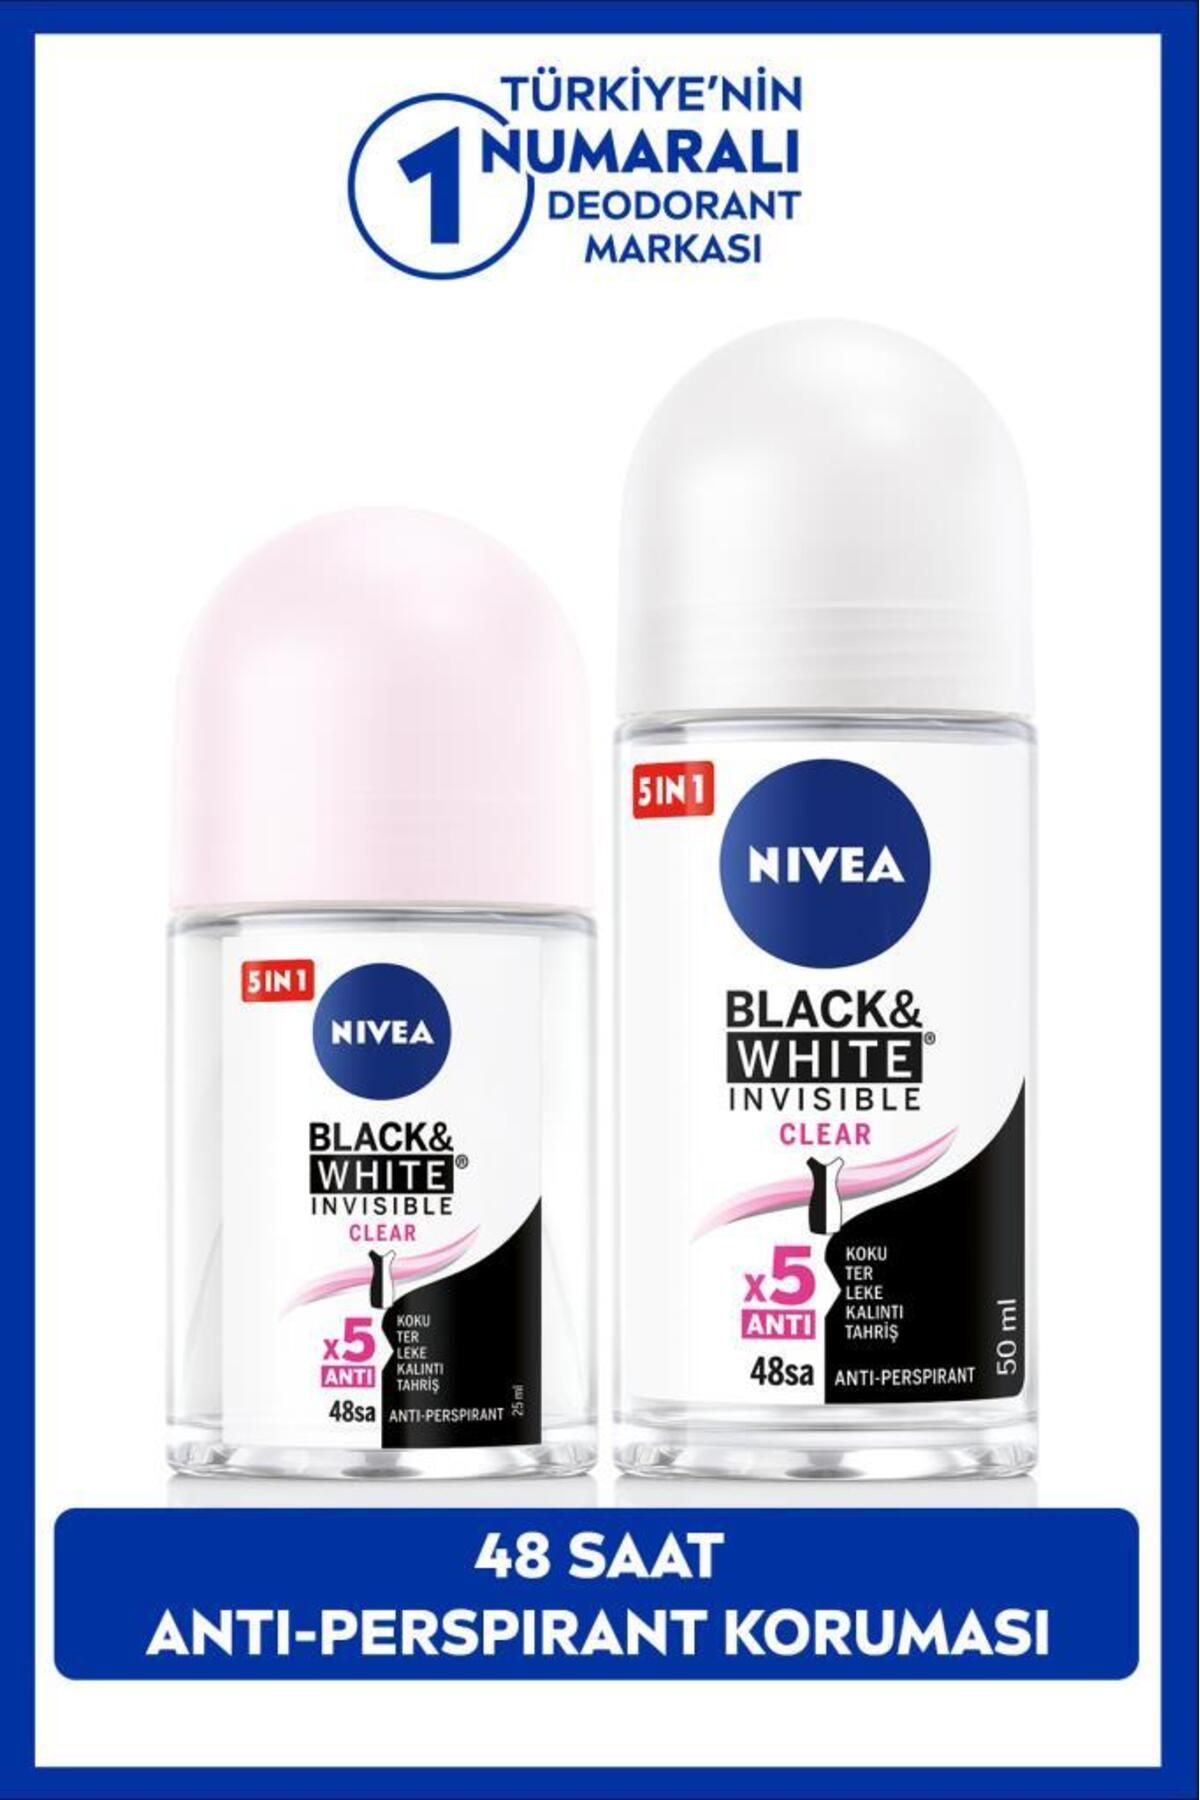 NIVEA Kadın Roll-on Deodorant Black&white Clear 50ml Ve Mini Roll-on Black&white Clear 25ml